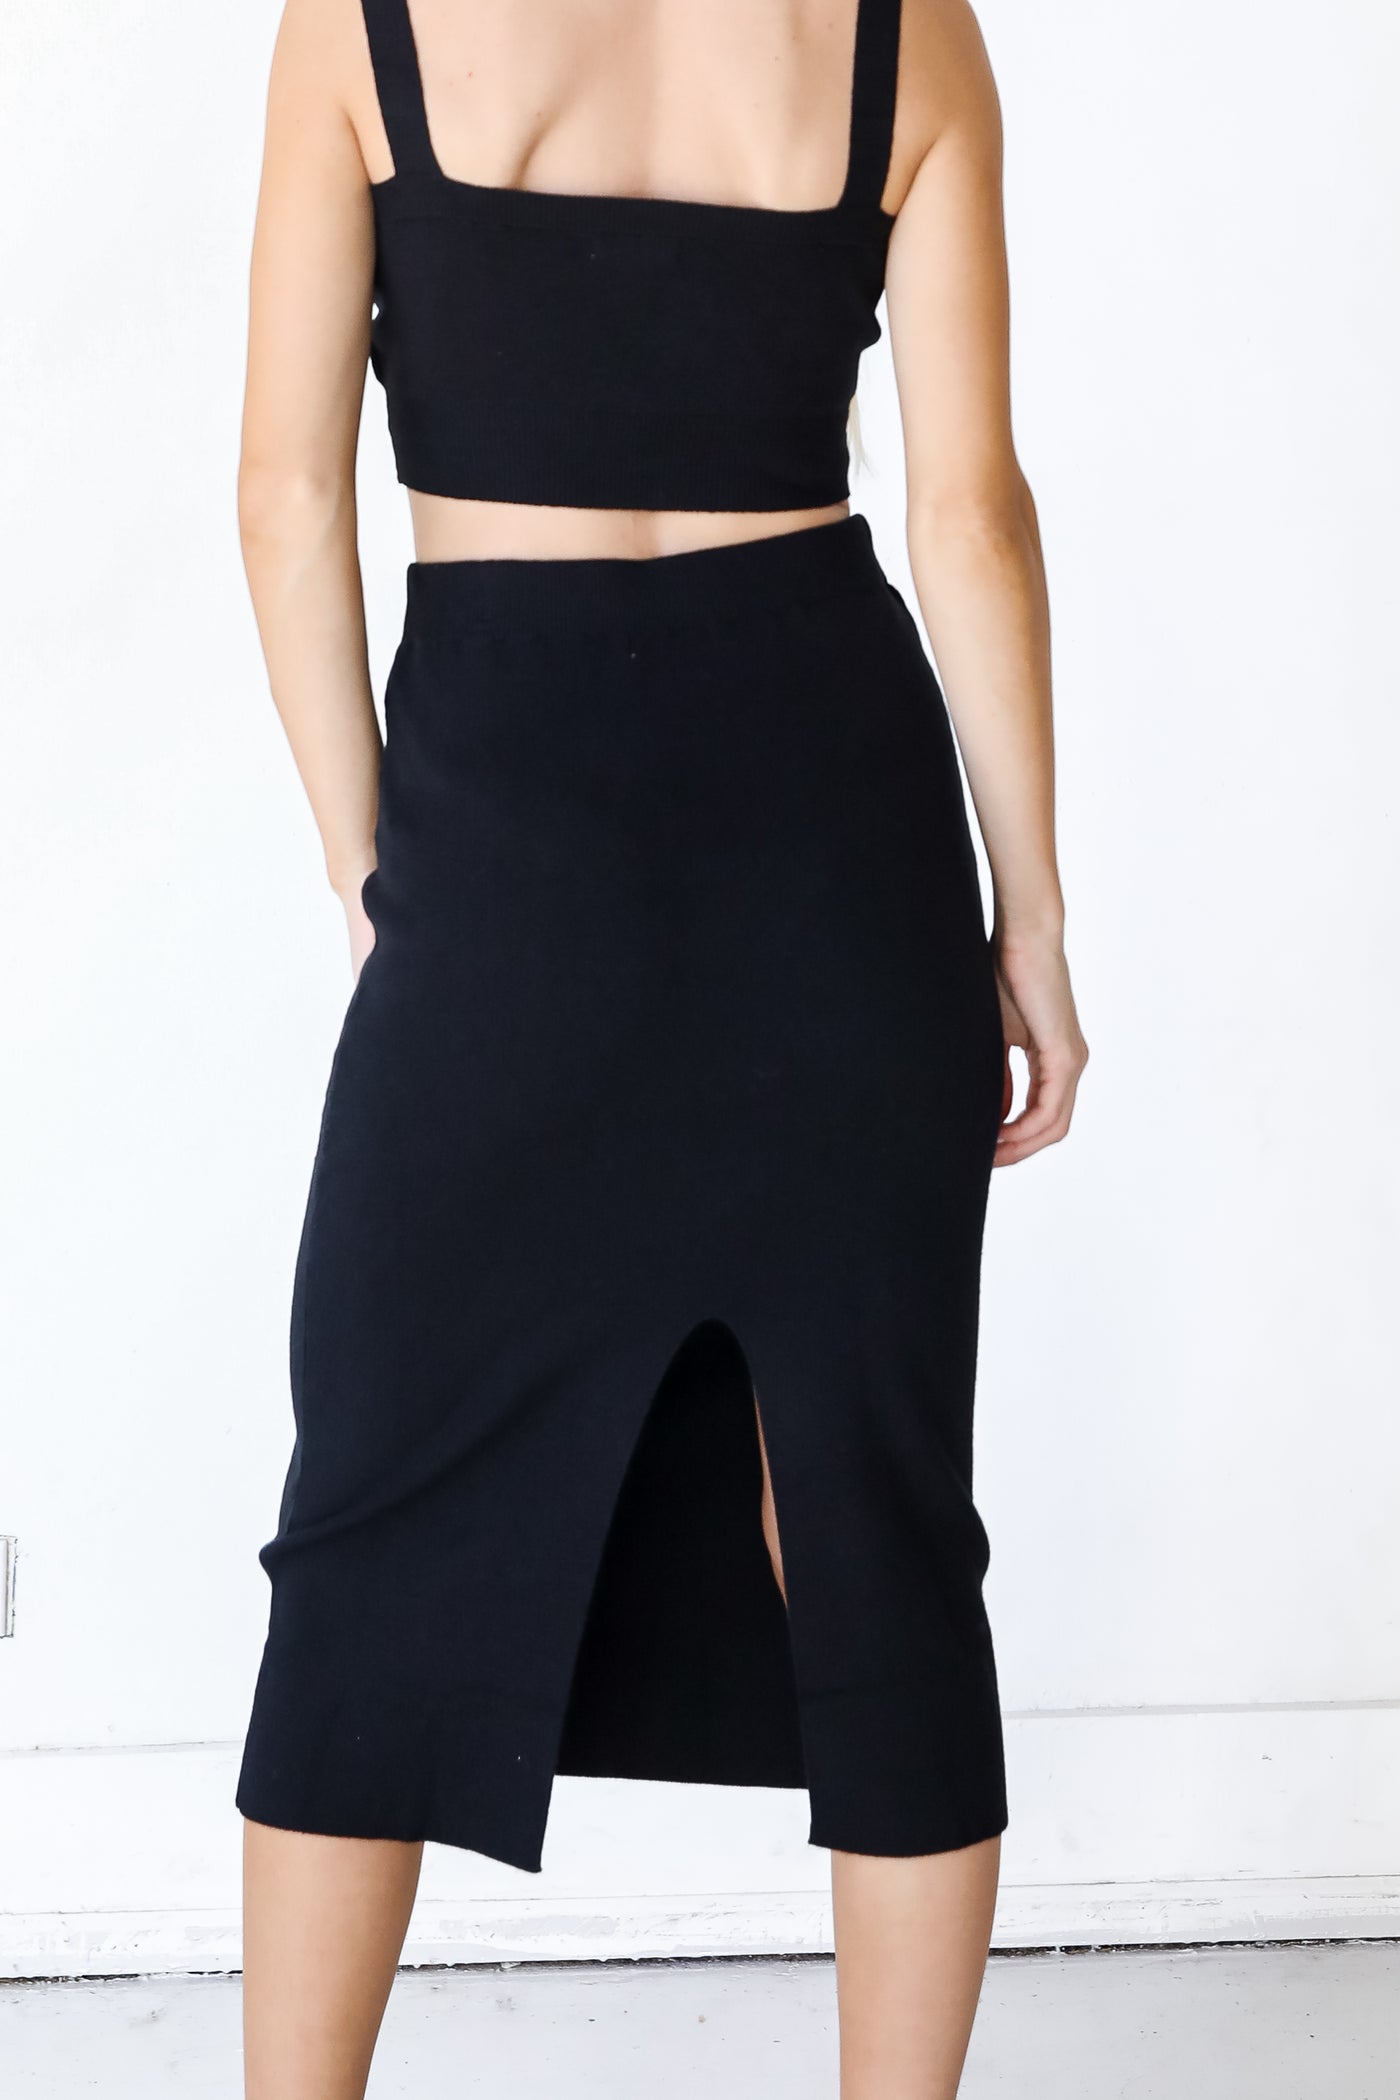 Knit Midi Skirt in black back view